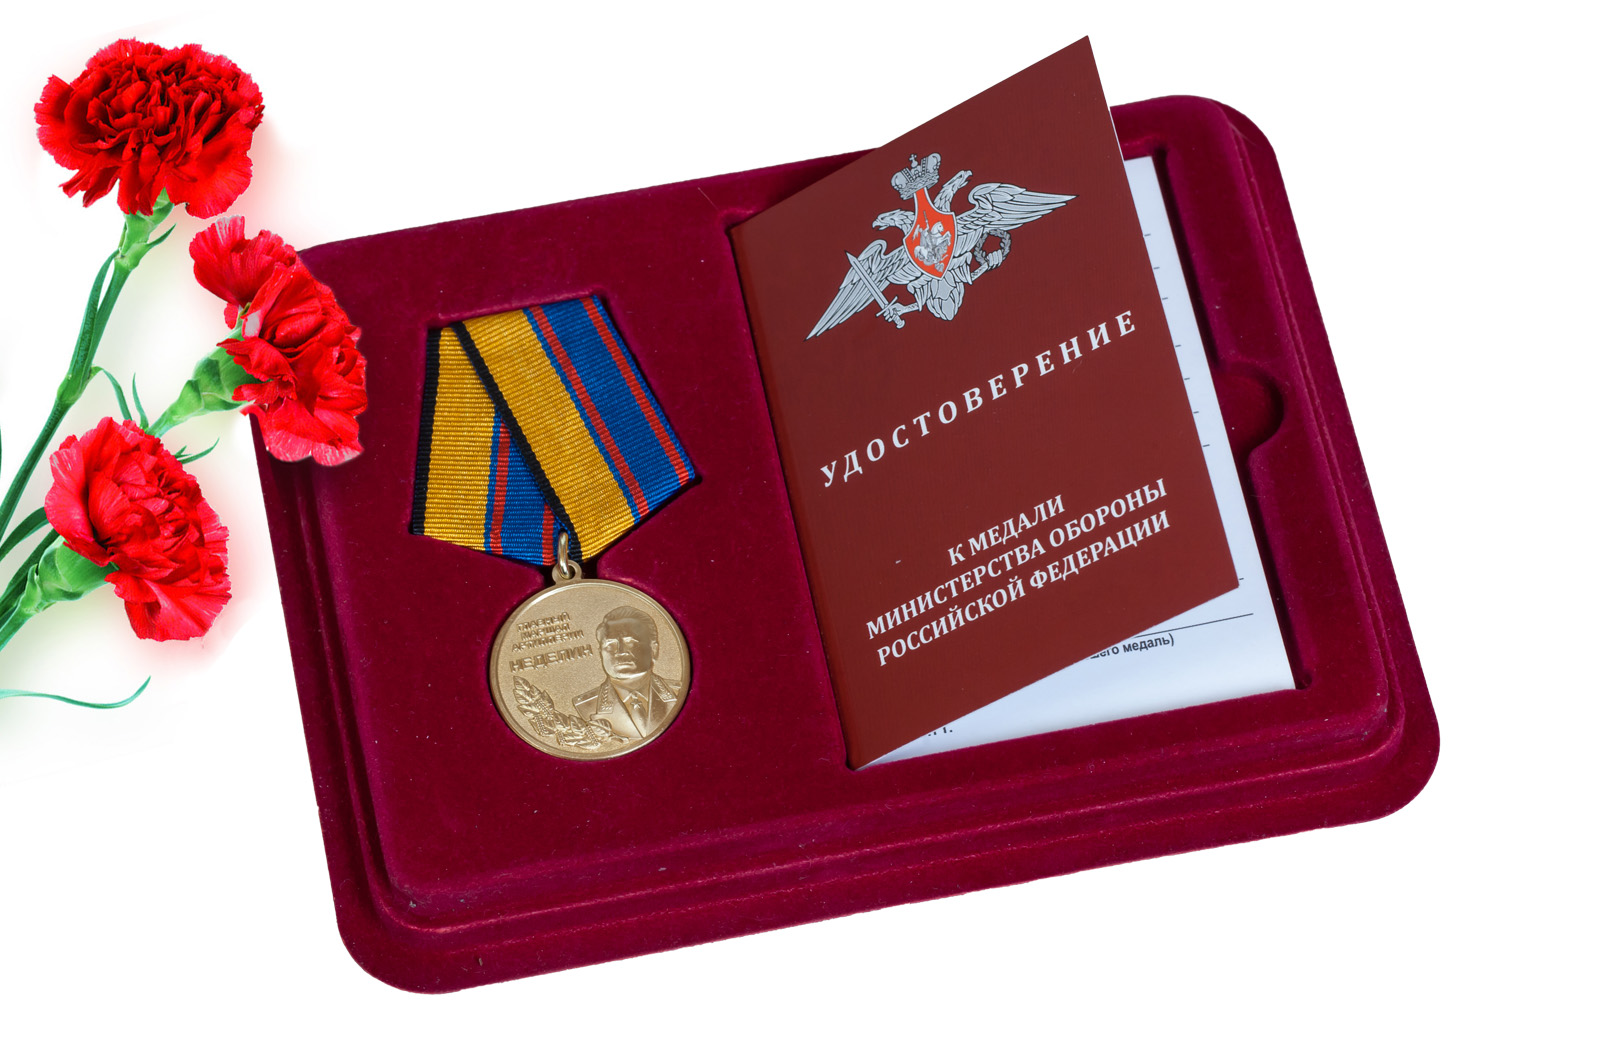 Купить медаль Главный маршал артиллерии Неделин оптом или в розницу